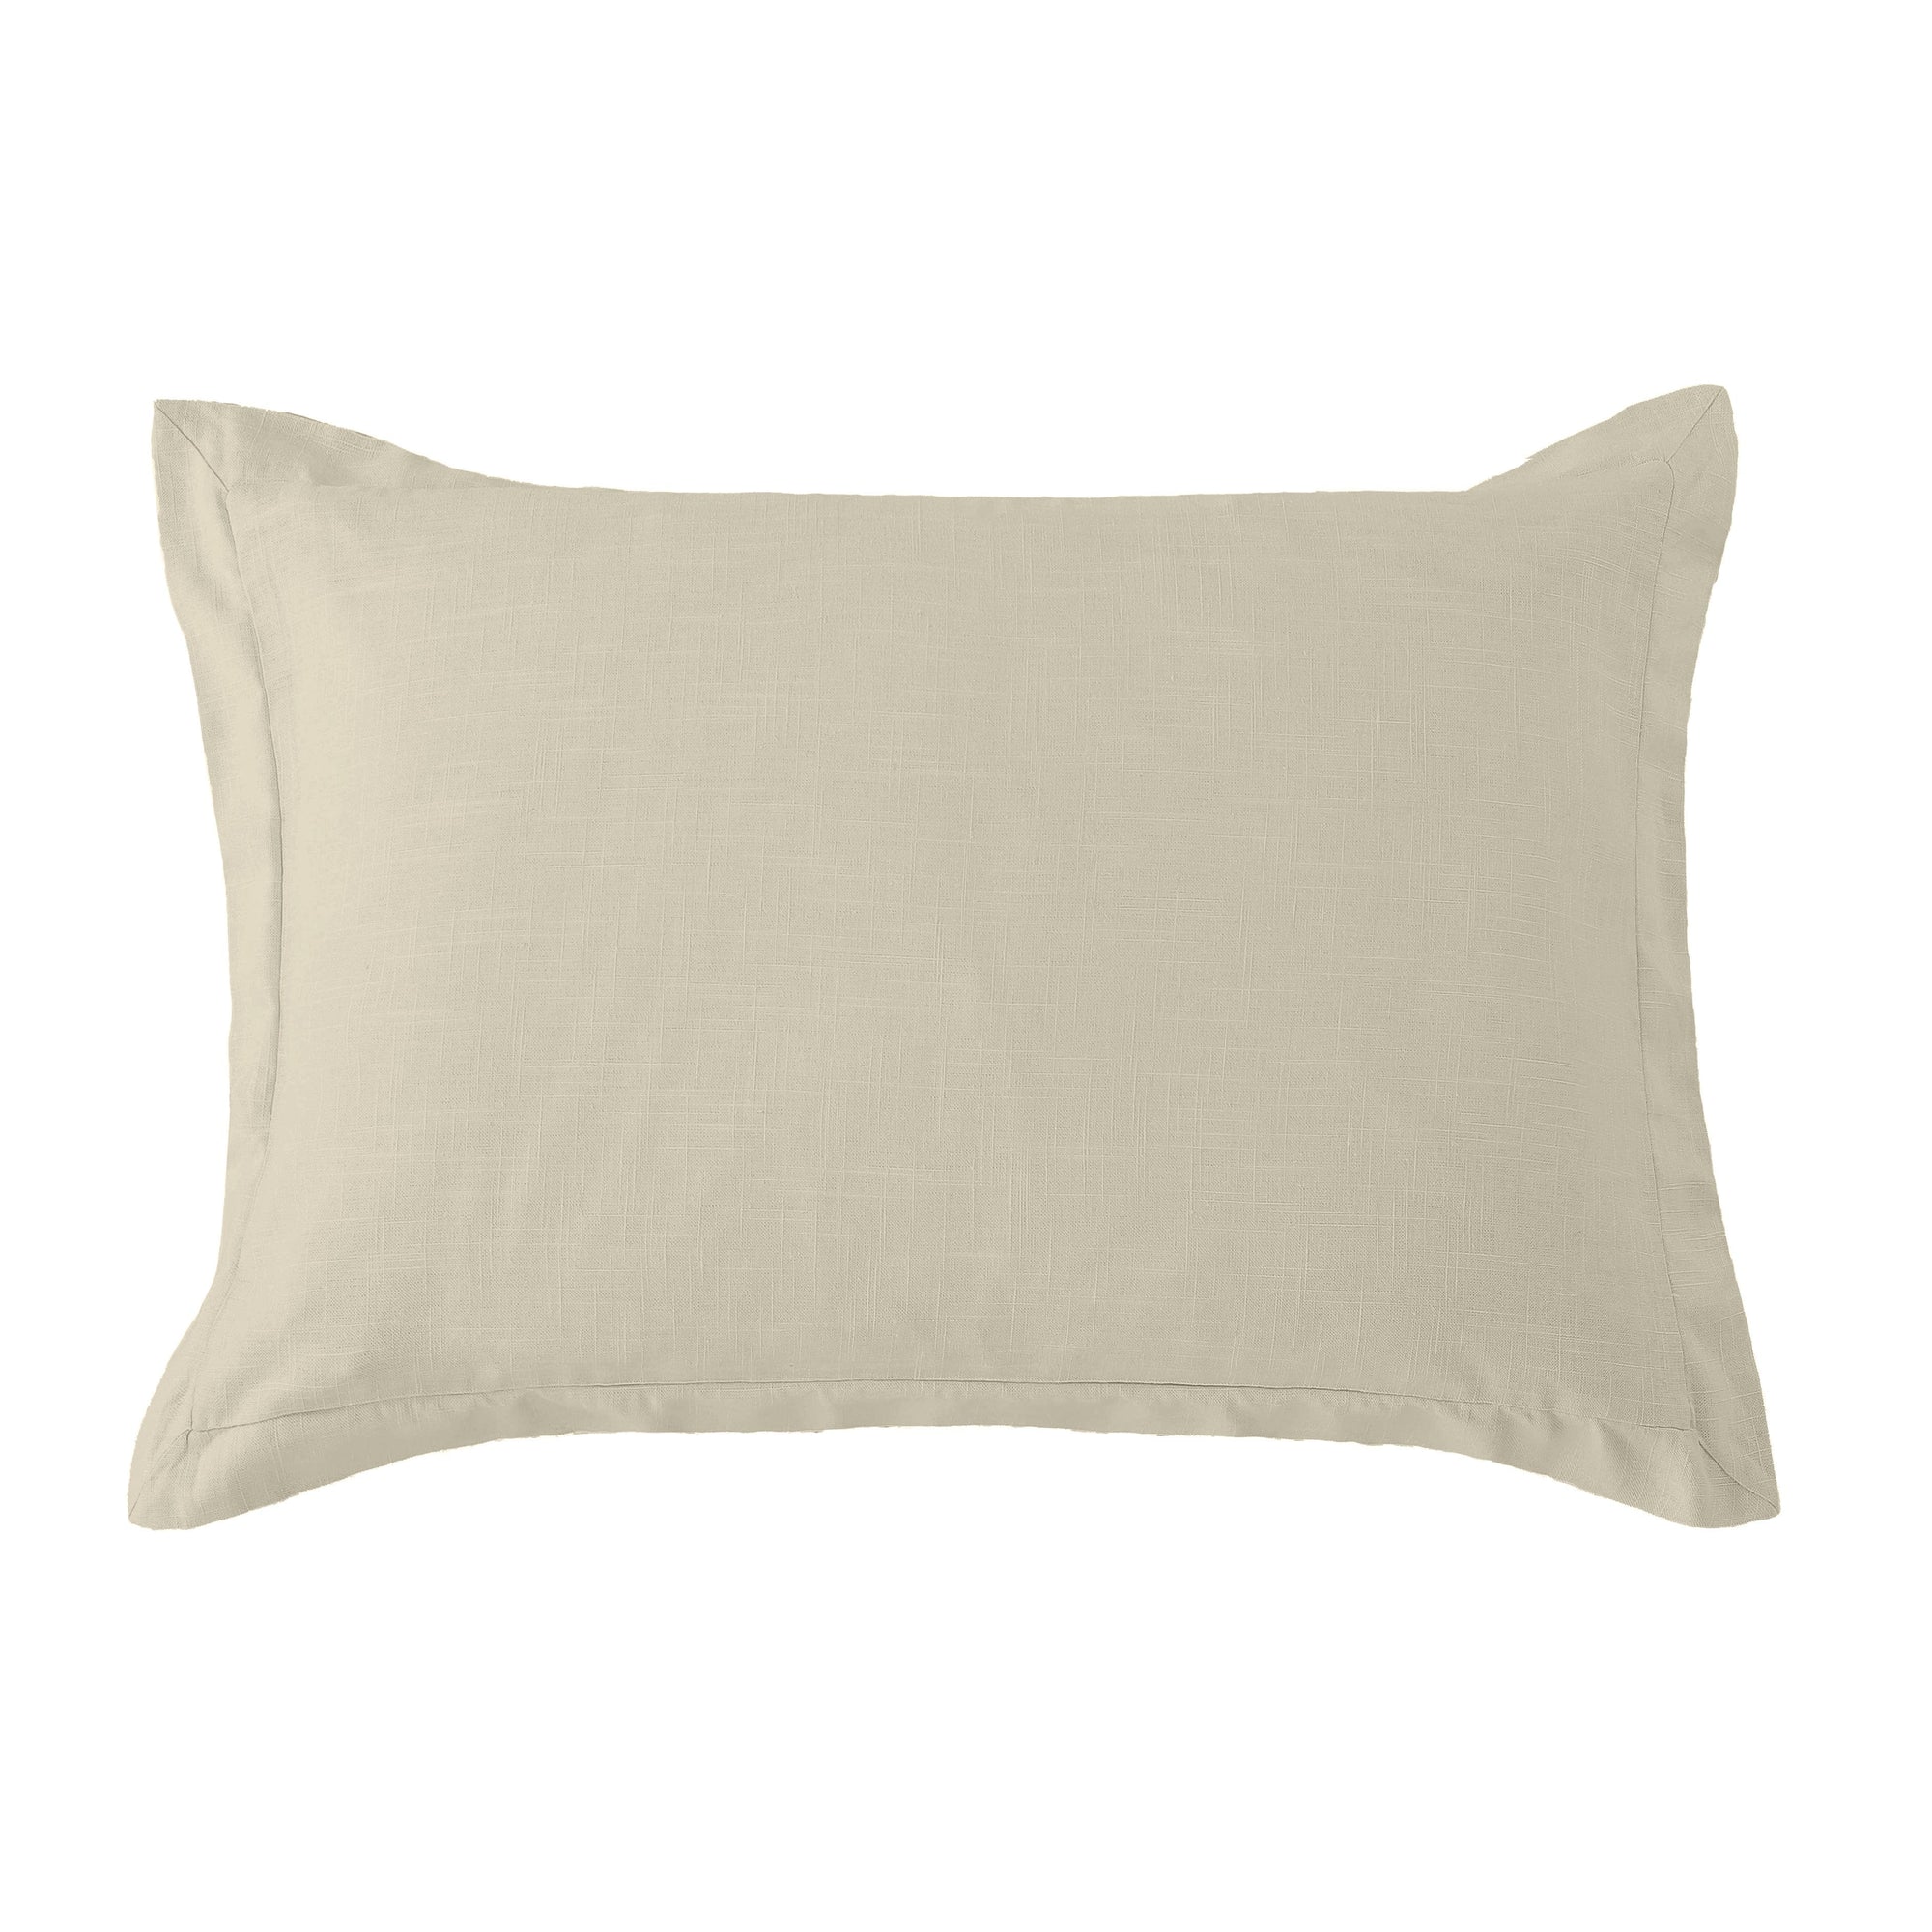 Washed Linen Tailored Pillow Sham Standard / Light Tan Sham